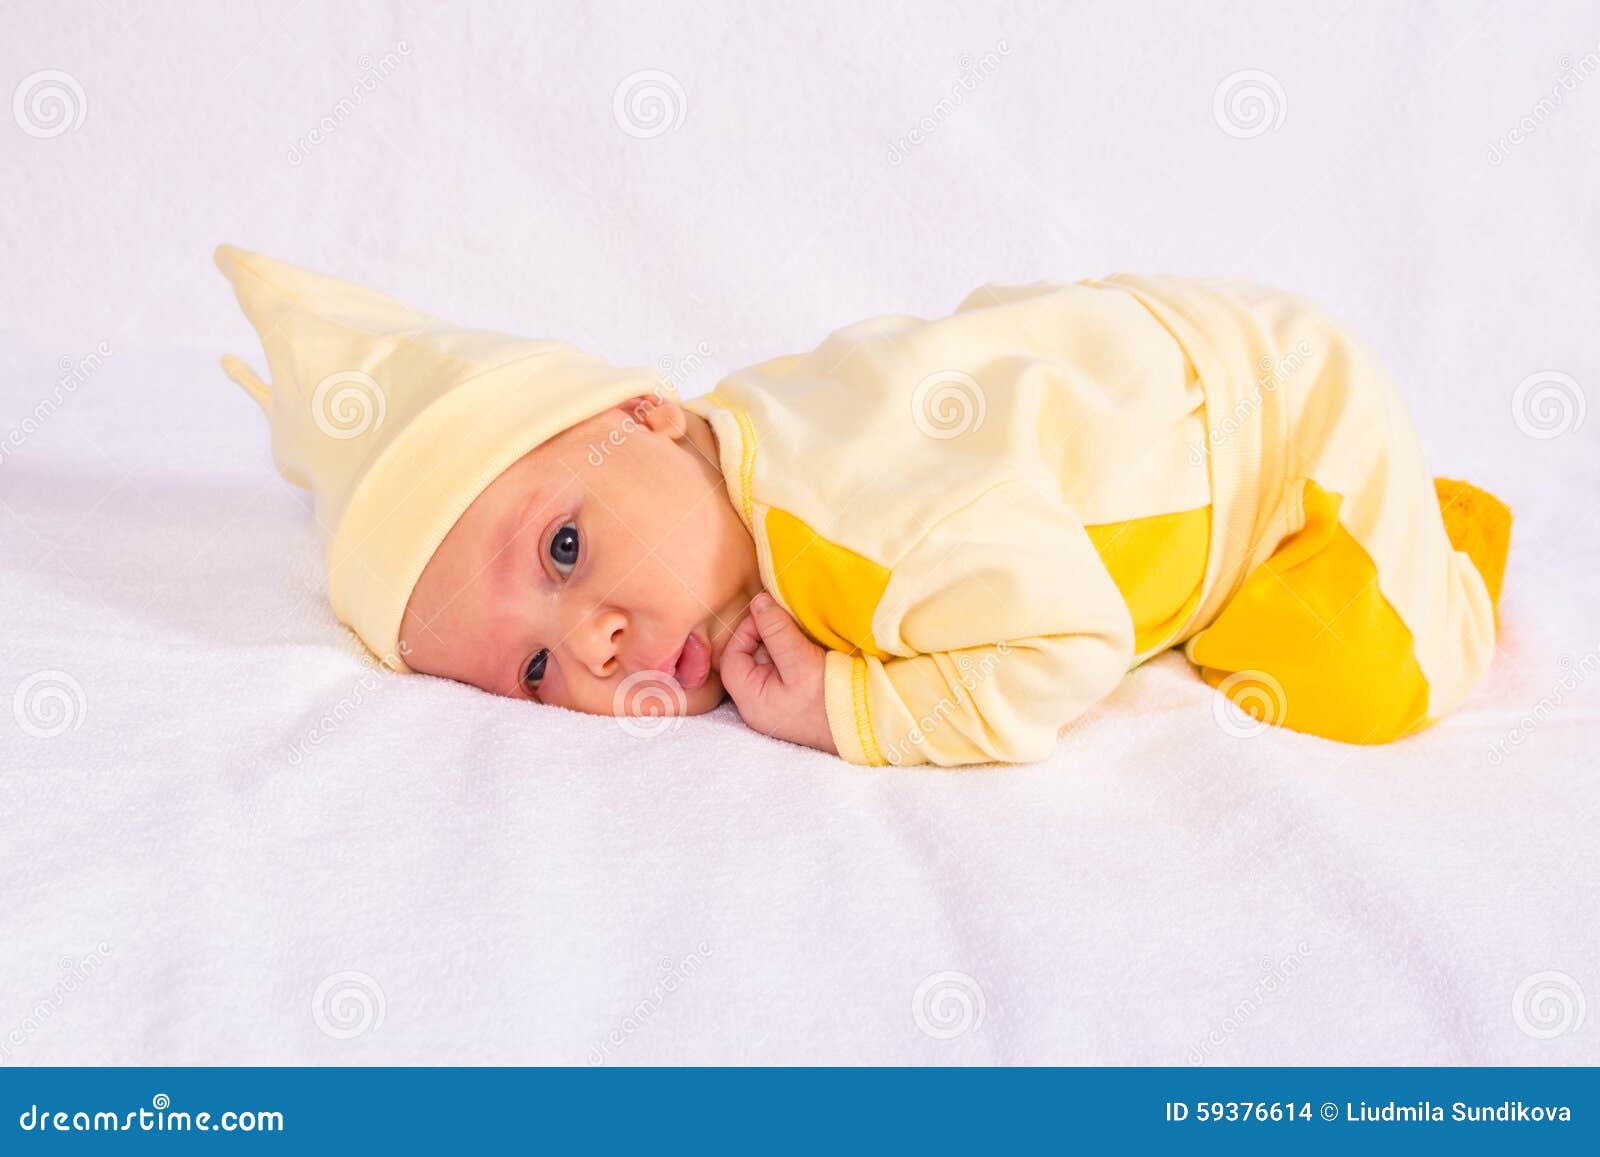 Cualquier Giotto Dibondon Galaxia Retrato Del Bebé En Ropa Amarilla Foto de archivo - Imagen de manta, fondo:  59376614